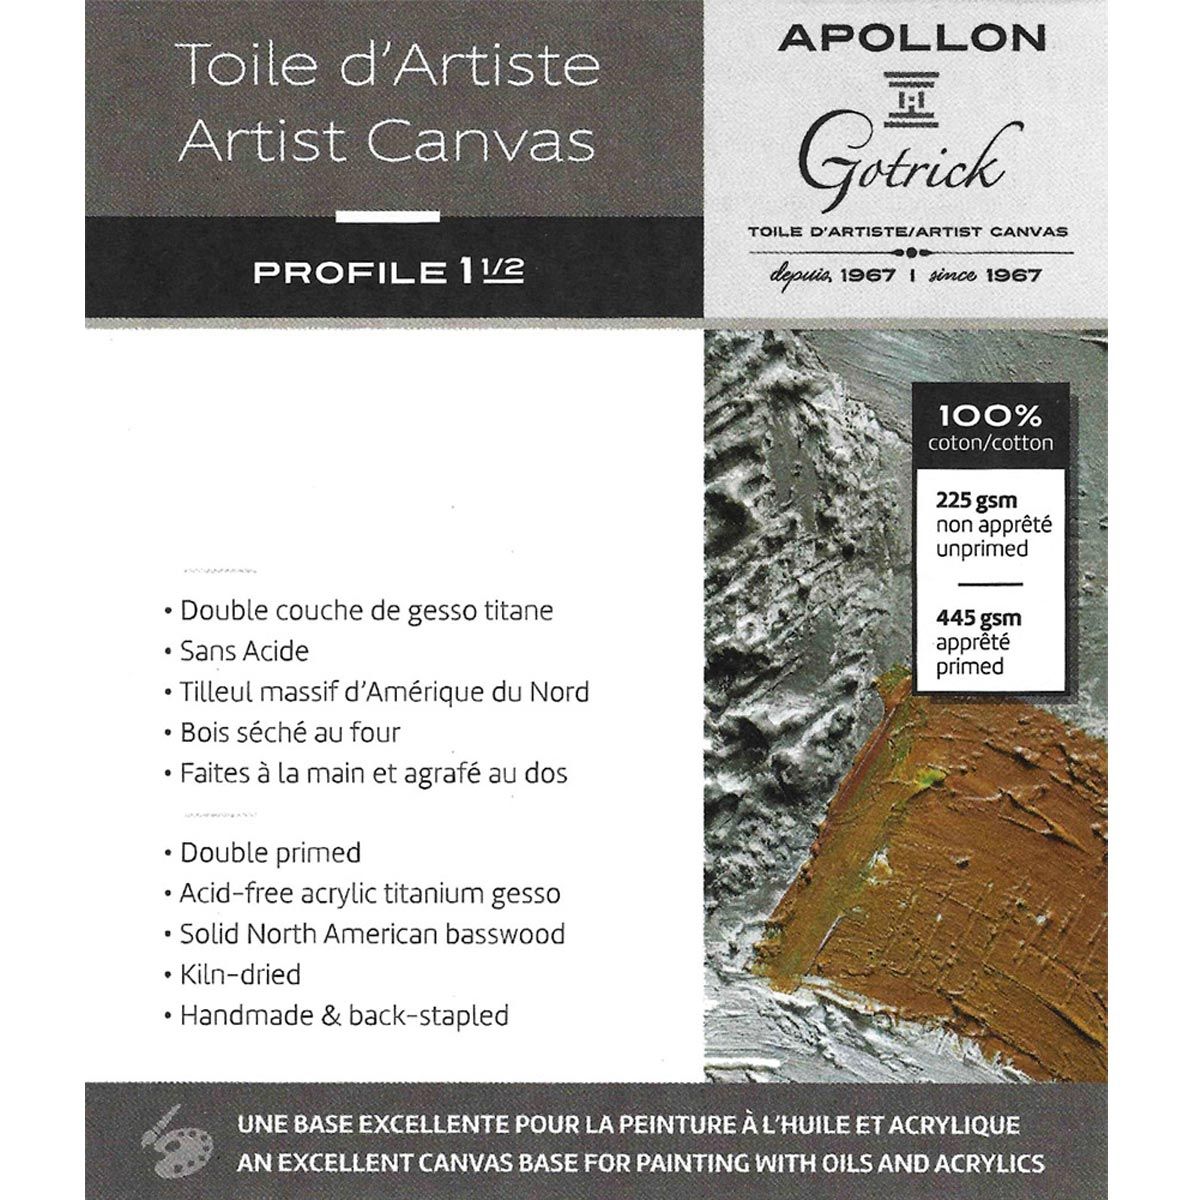 Apollon Gotrick Gallery Artist Canvas Profile 1½" - 12" x 24"